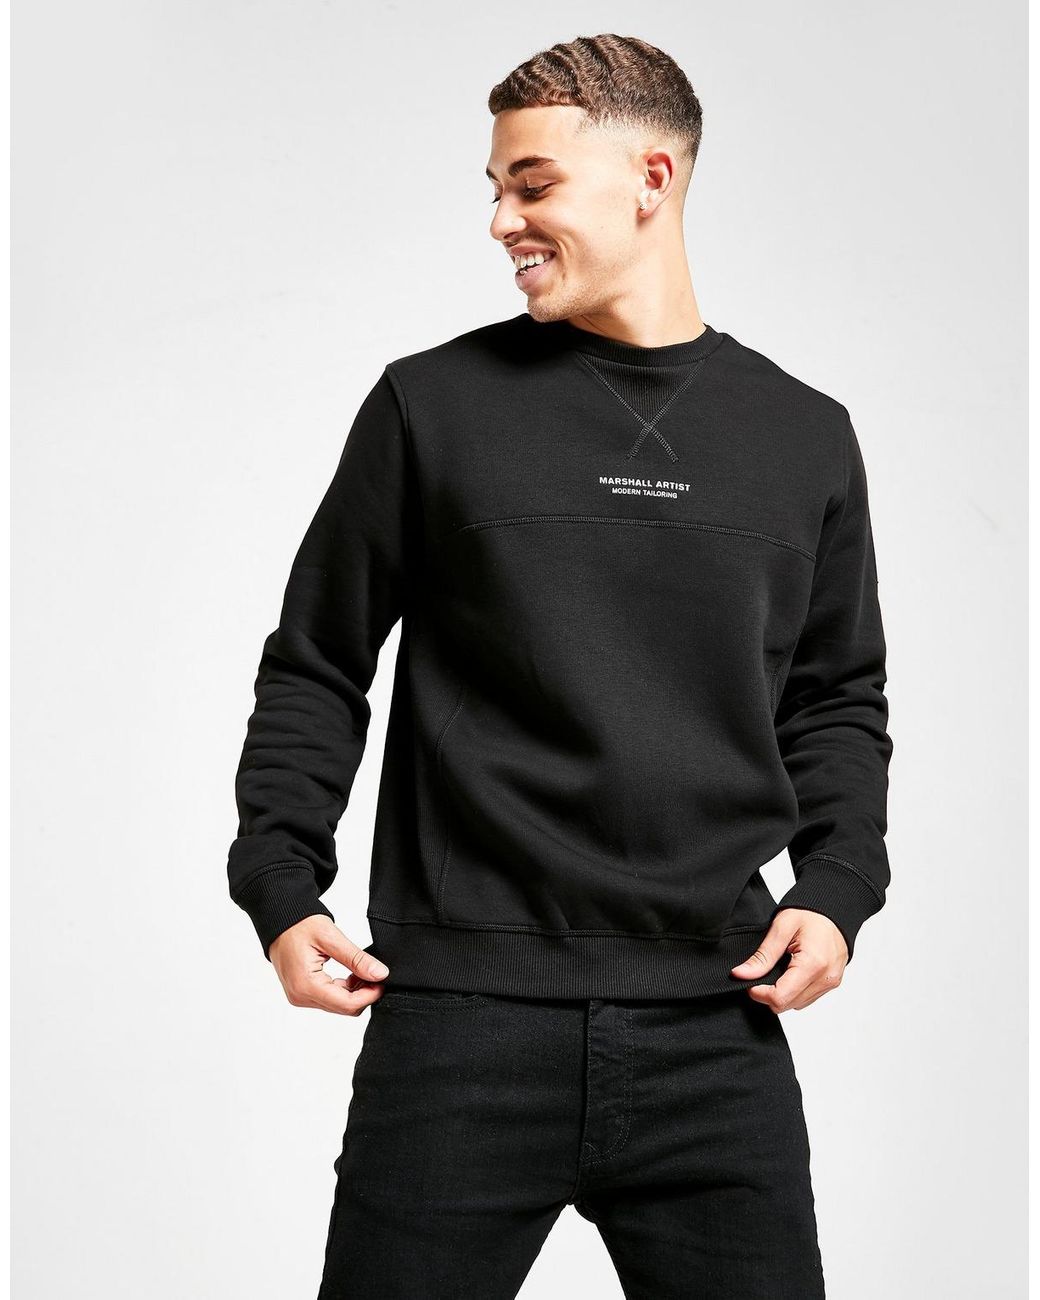 Marshall Artist Fleece Siren Crew Sweatshirt in Black for Men - Lyst